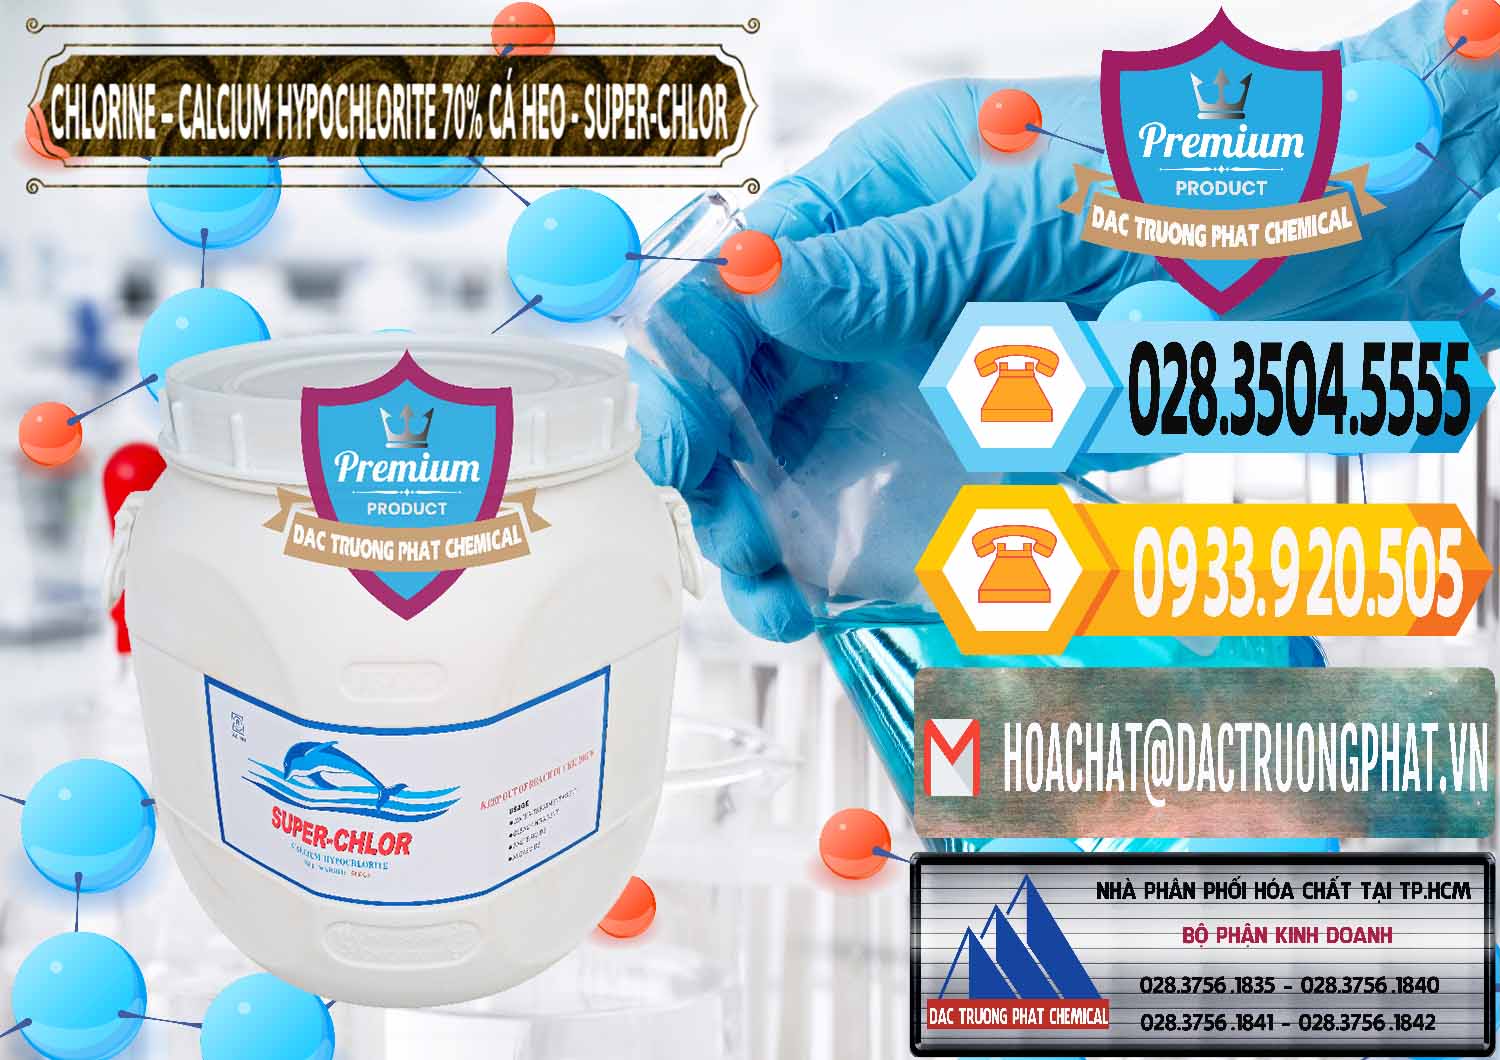 Nơi phân phối & bán Clorin - Chlorine Cá Heo 70% Super Chlor Trung Quốc China - 0058 - Đơn vị nhập khẩu & phân phối hóa chất tại TP.HCM - hoachattayrua.net